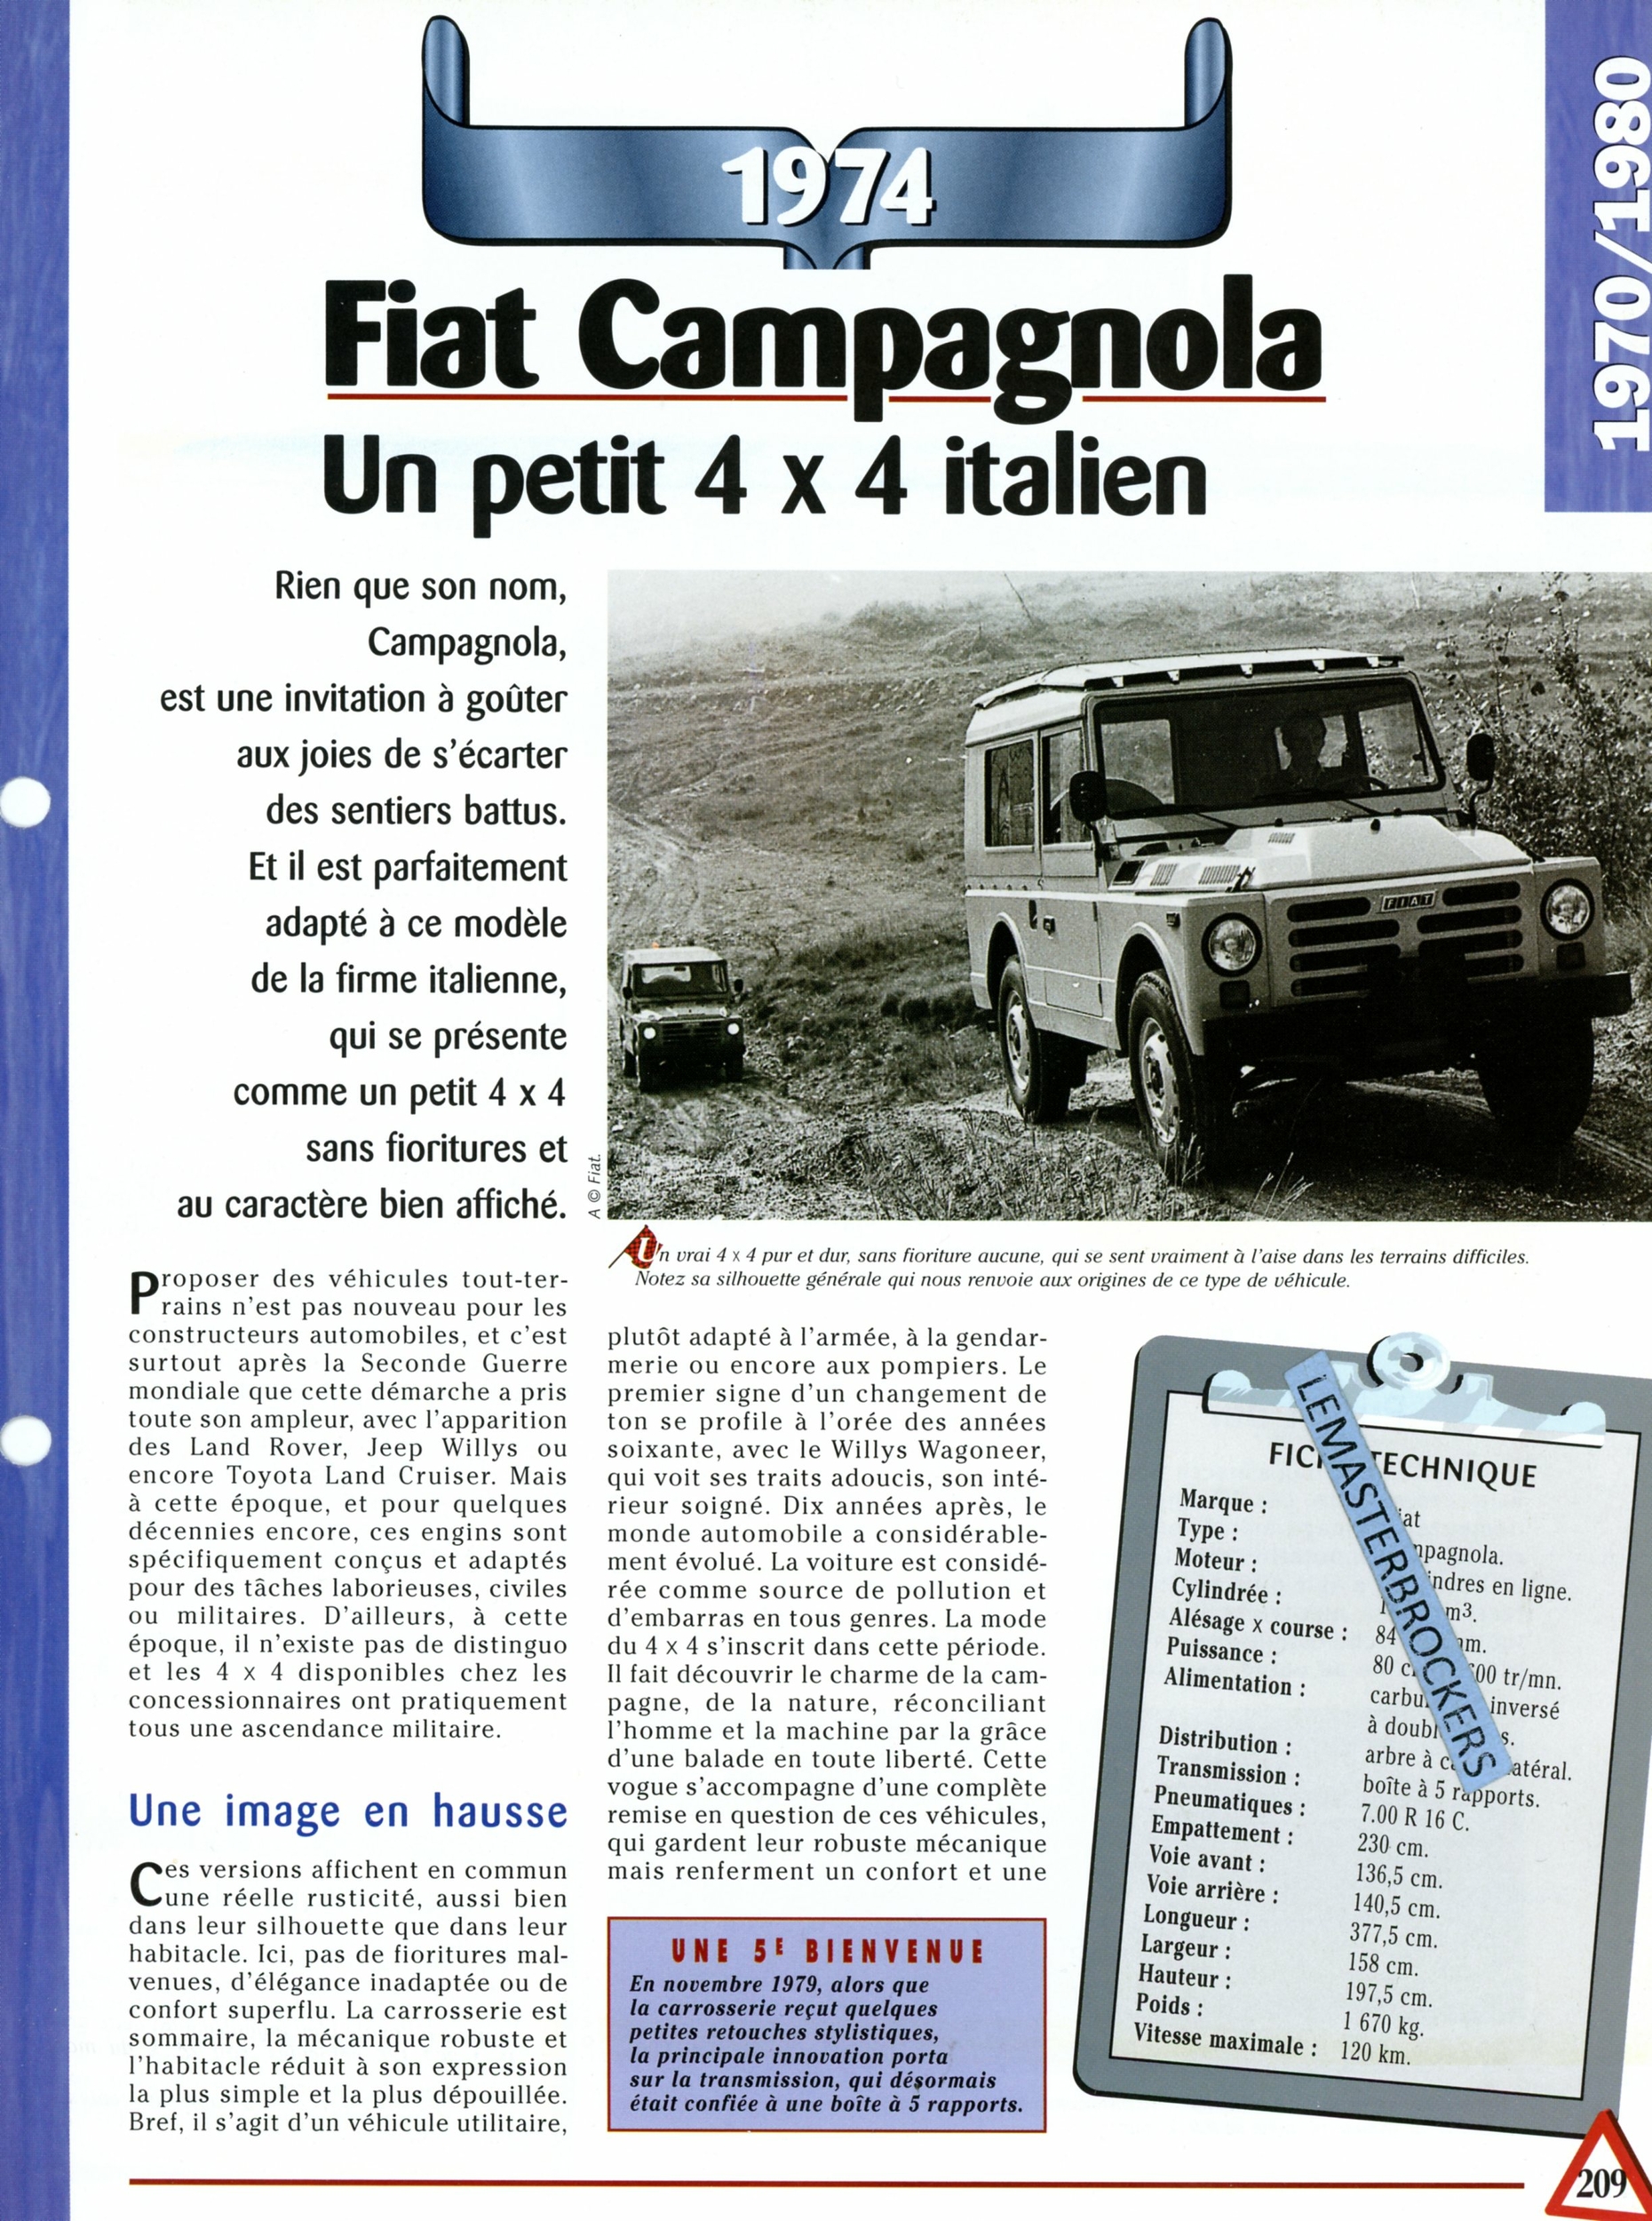 FIAT-CAMPAGNOLA-4X4-1974-FICHE-AUTO-FICHE-TECHNIQUE-VOITURE-LEMASTERBROCKERS